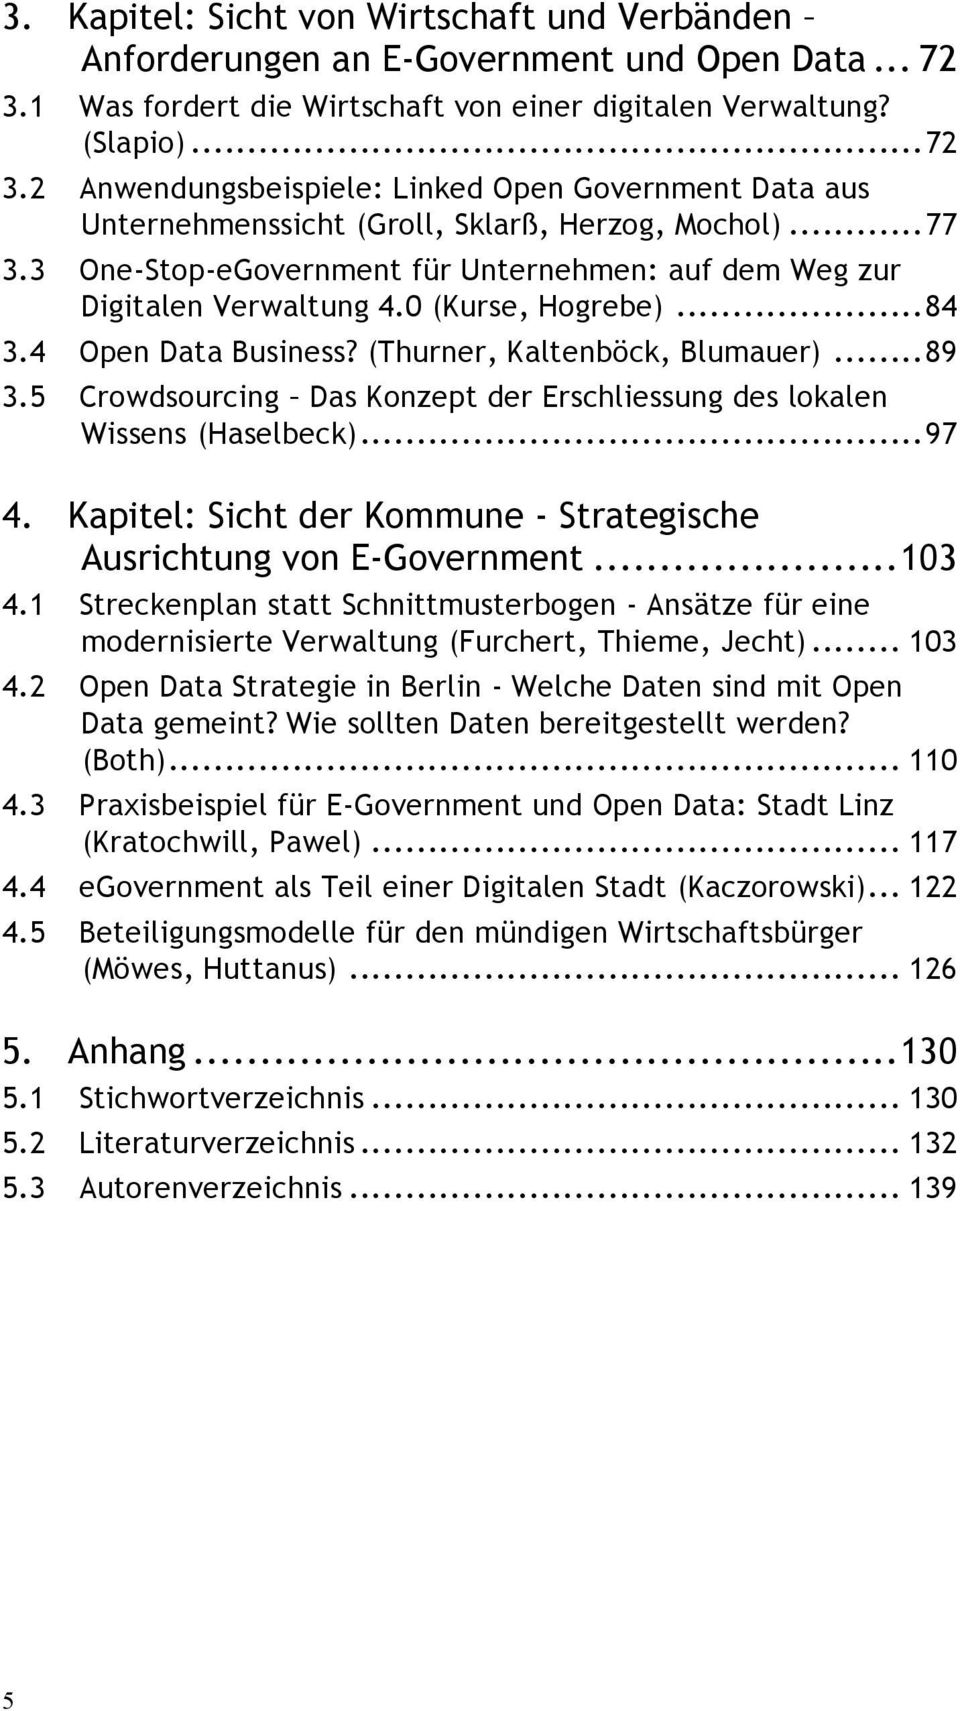 3 One-Stop-eGovernment für Unternehmen: auf dem Weg zur Digitalen Verwaltung 4.0 (Kurse, Hogrebe)... 84 3.4 Open Data Business? (Thurner, Kaltenböck, Blumauer)... 89 3.